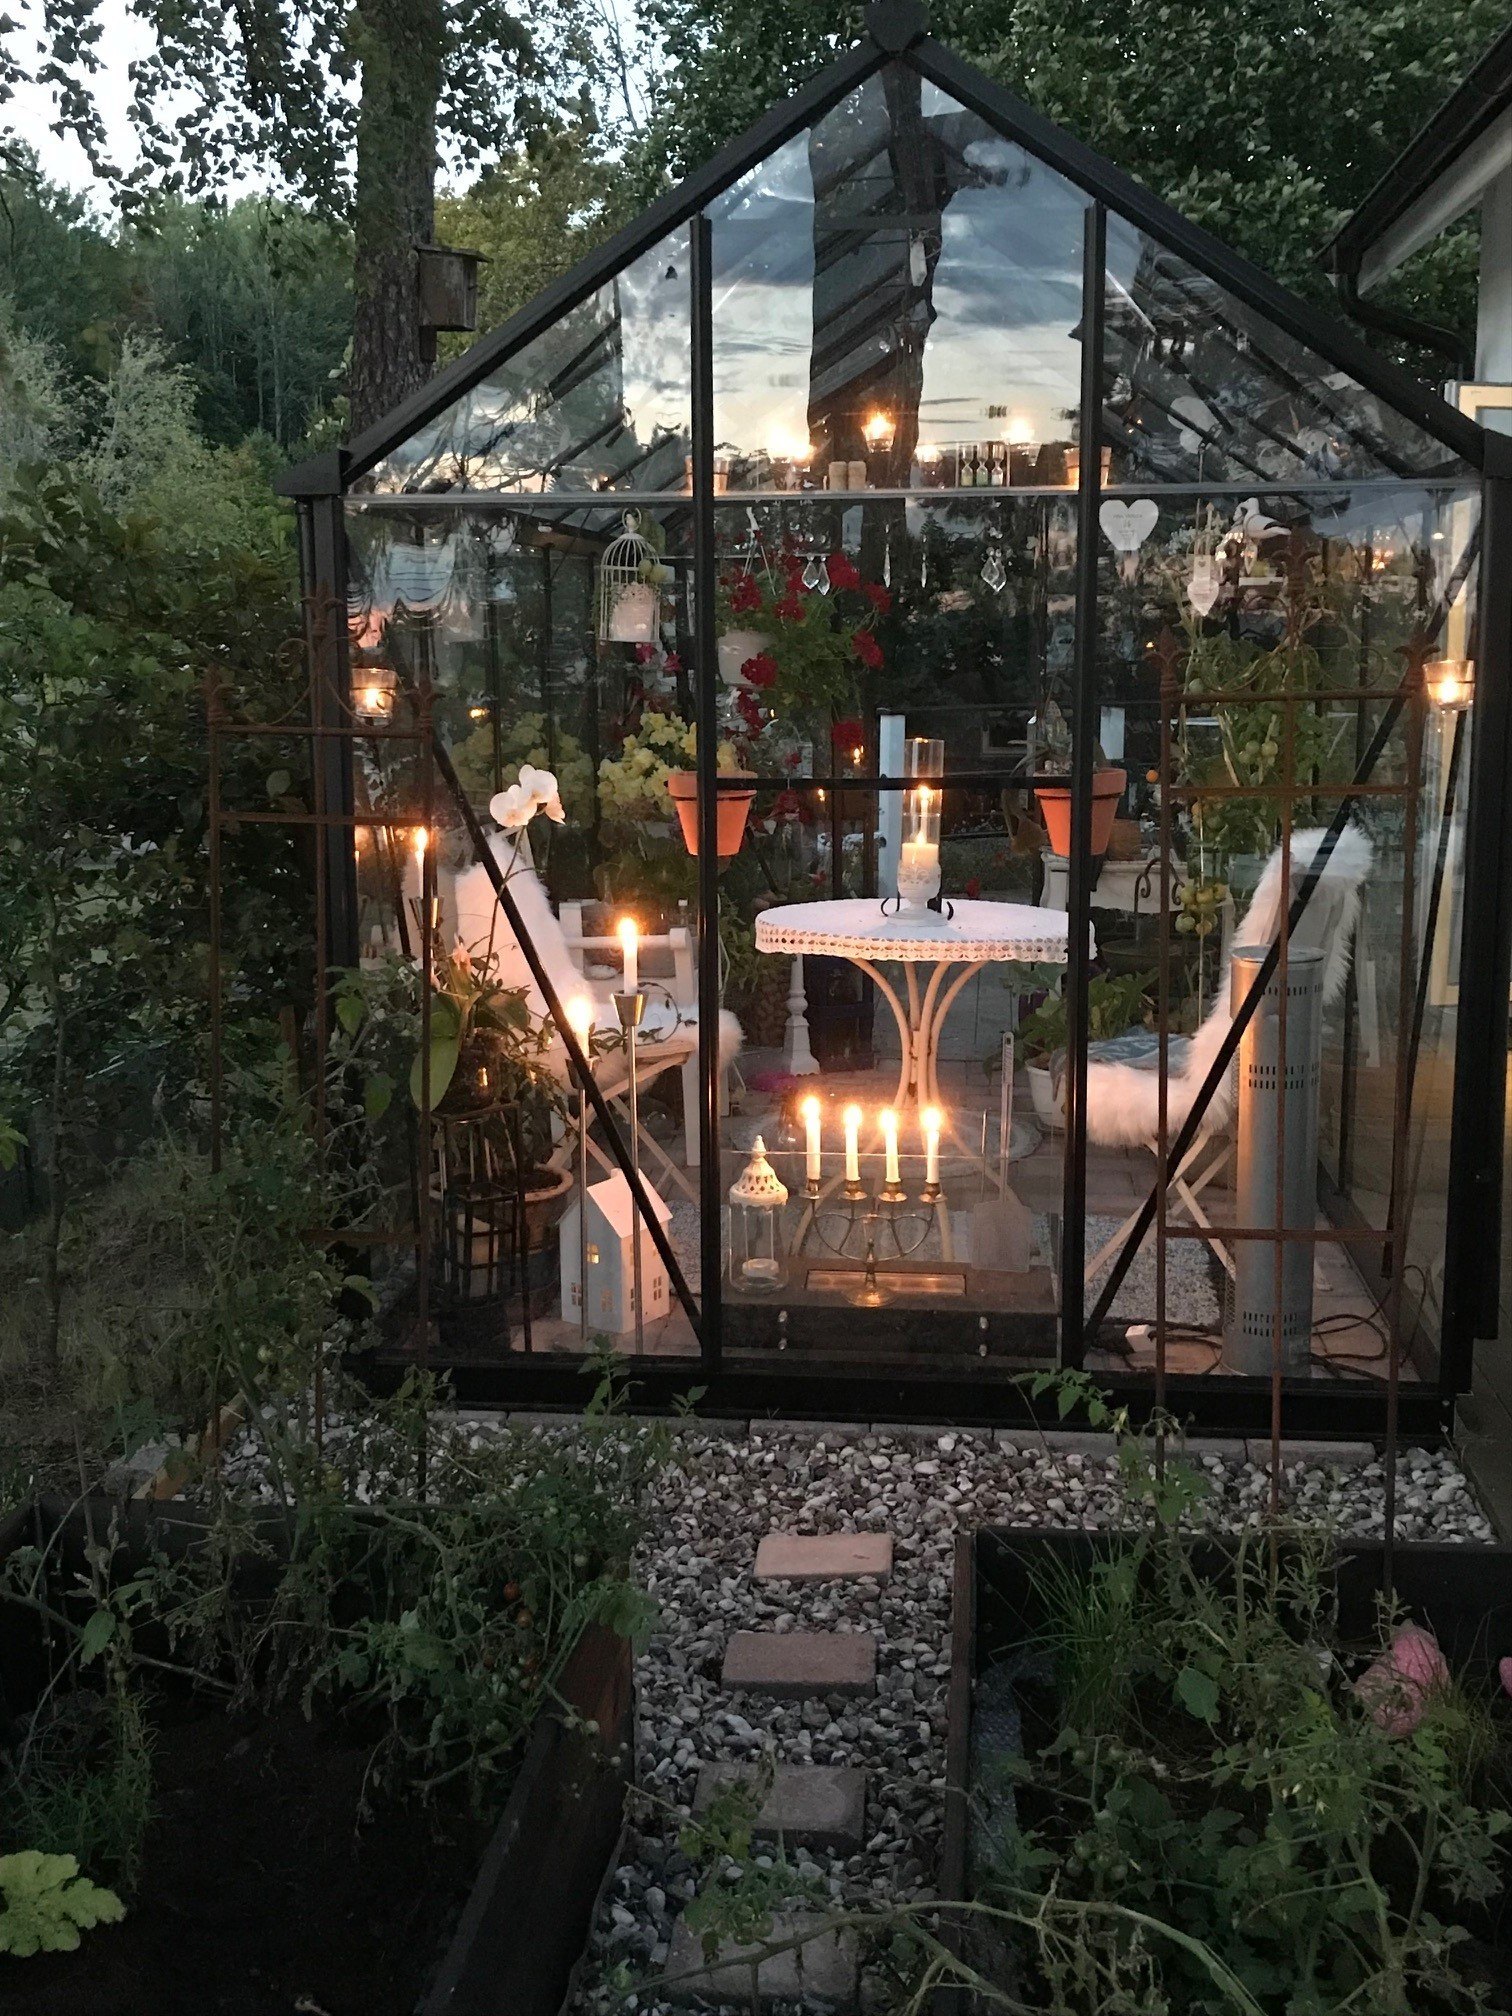 Ett svart inglasat växthus, utsmyckat med vackra detaljer och belysning som bringar ljus i kvällsmörkret.